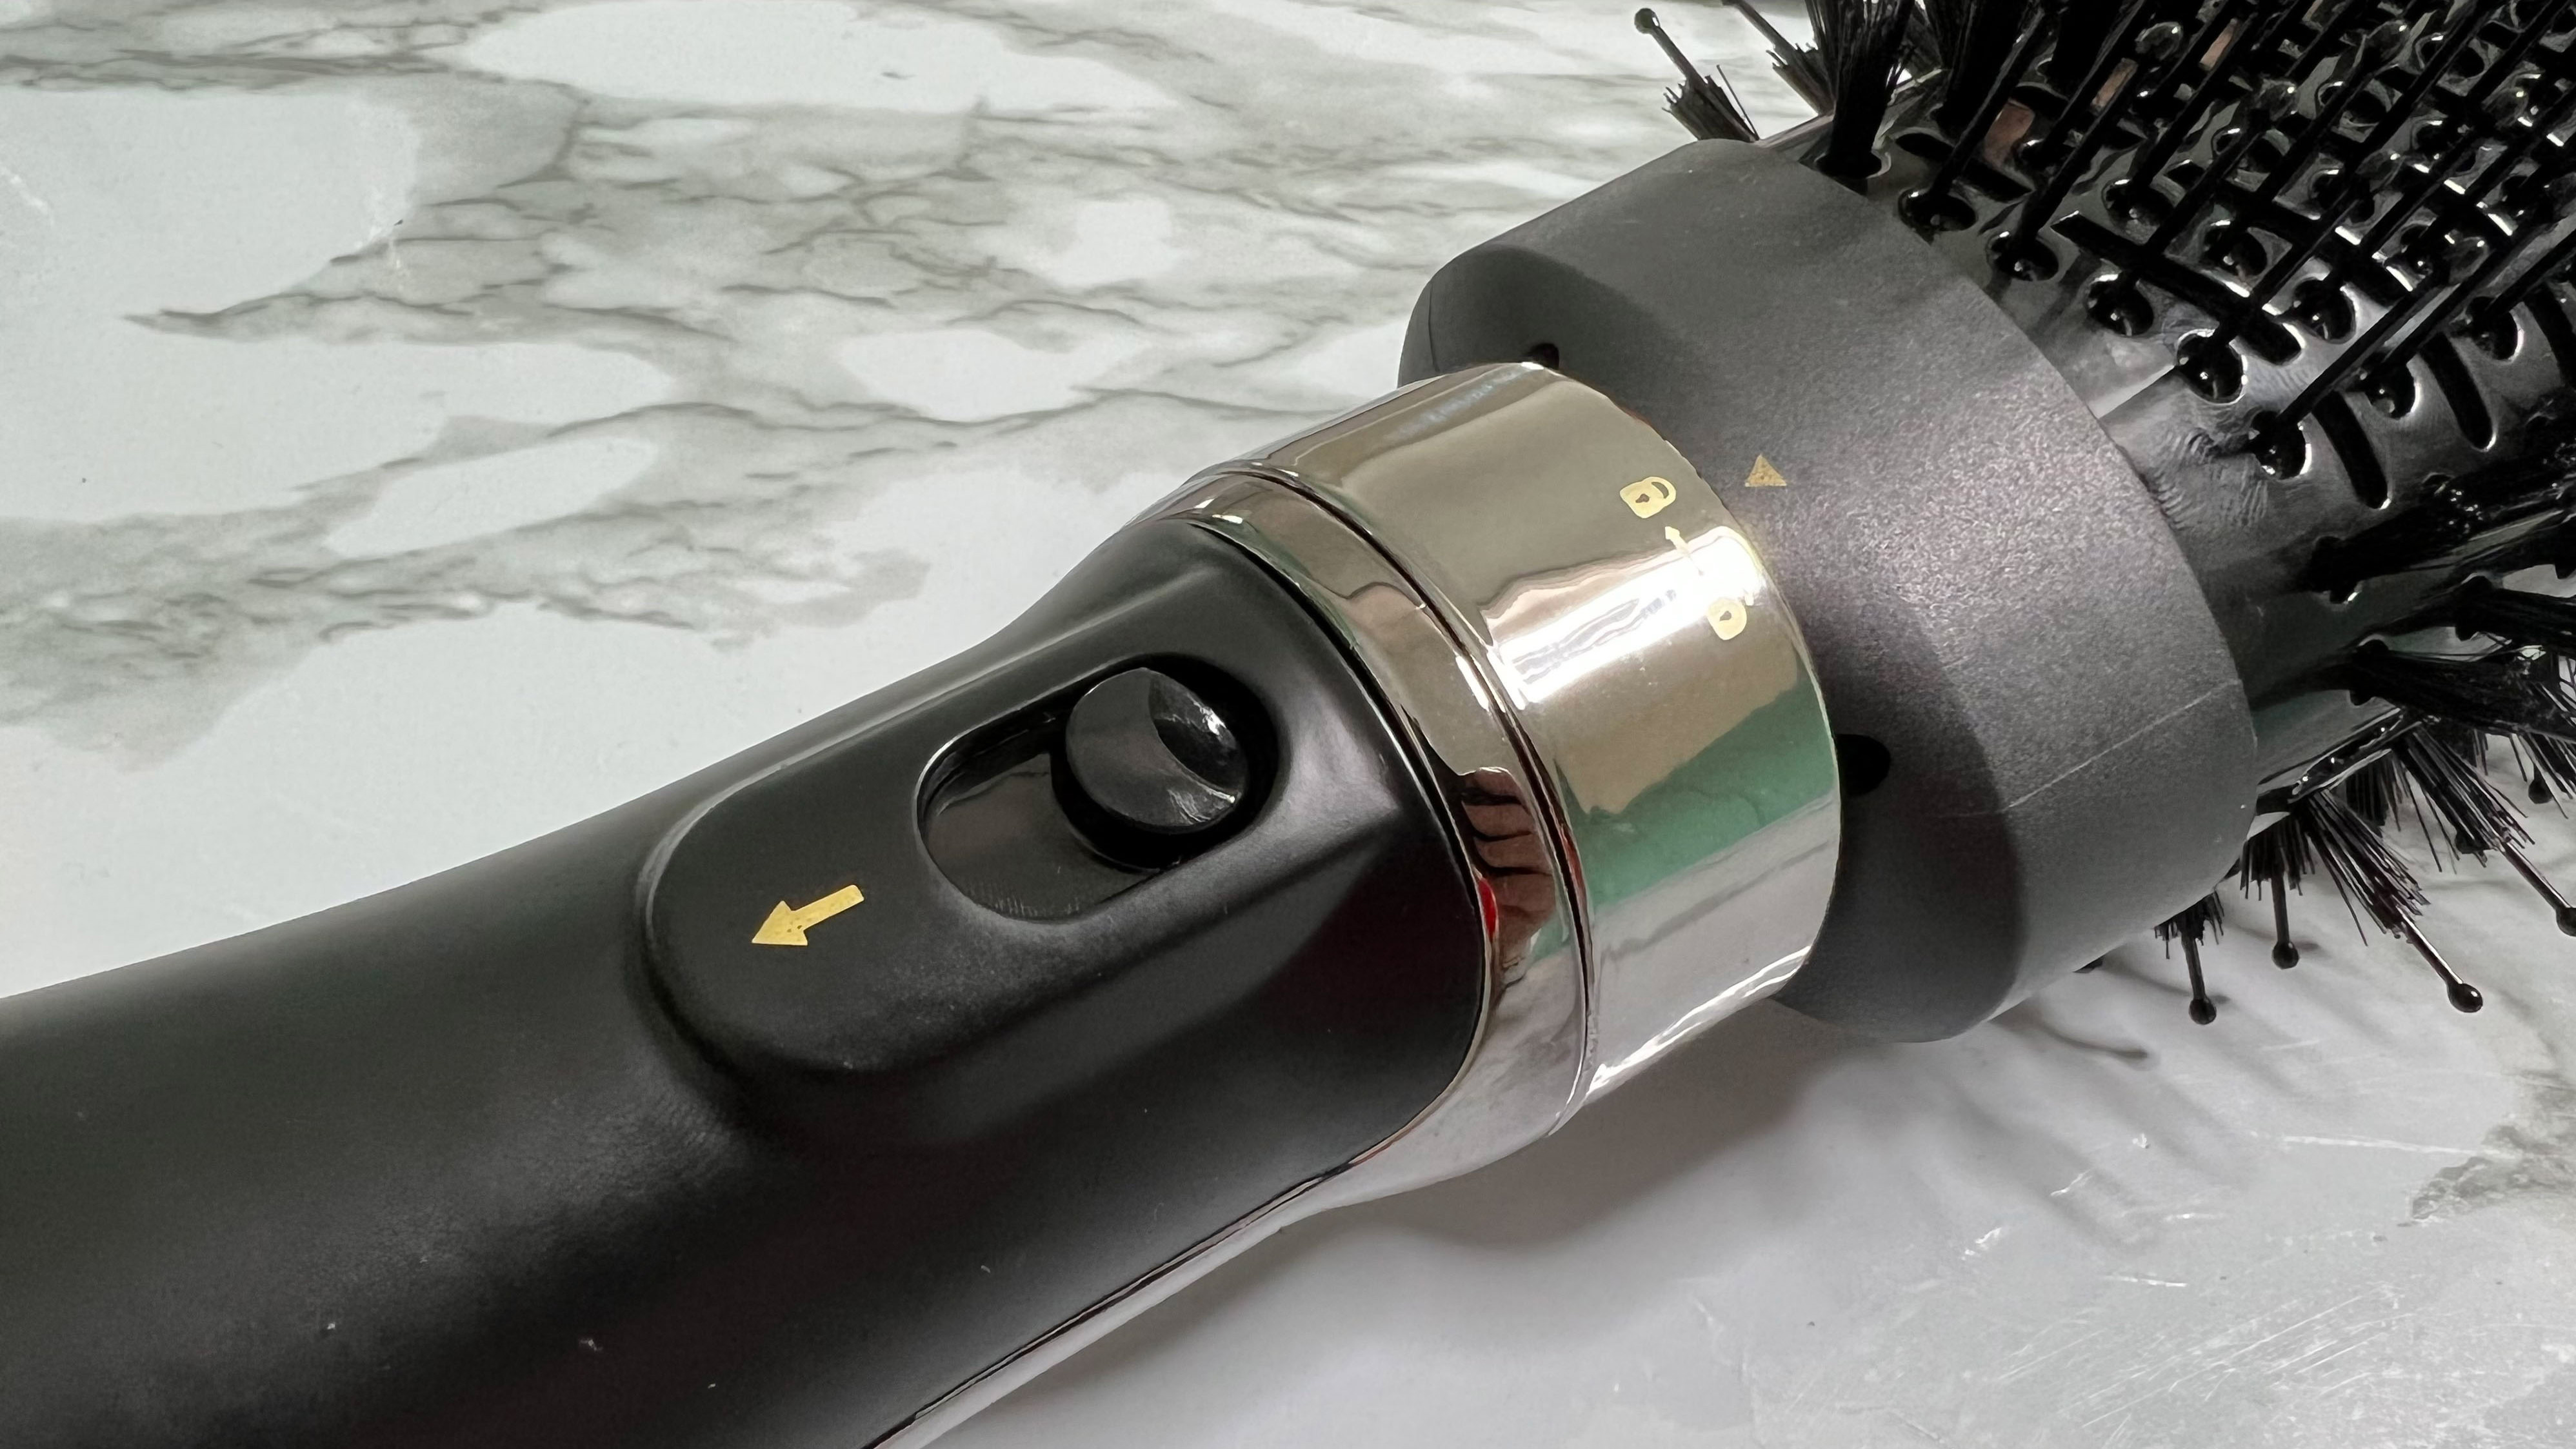 Tampilan close-up dari sakelar pengunci yang menahan attachment pada tempatnya di Hot Tools Volumiser 2-in-1 Brush and Dryer Set